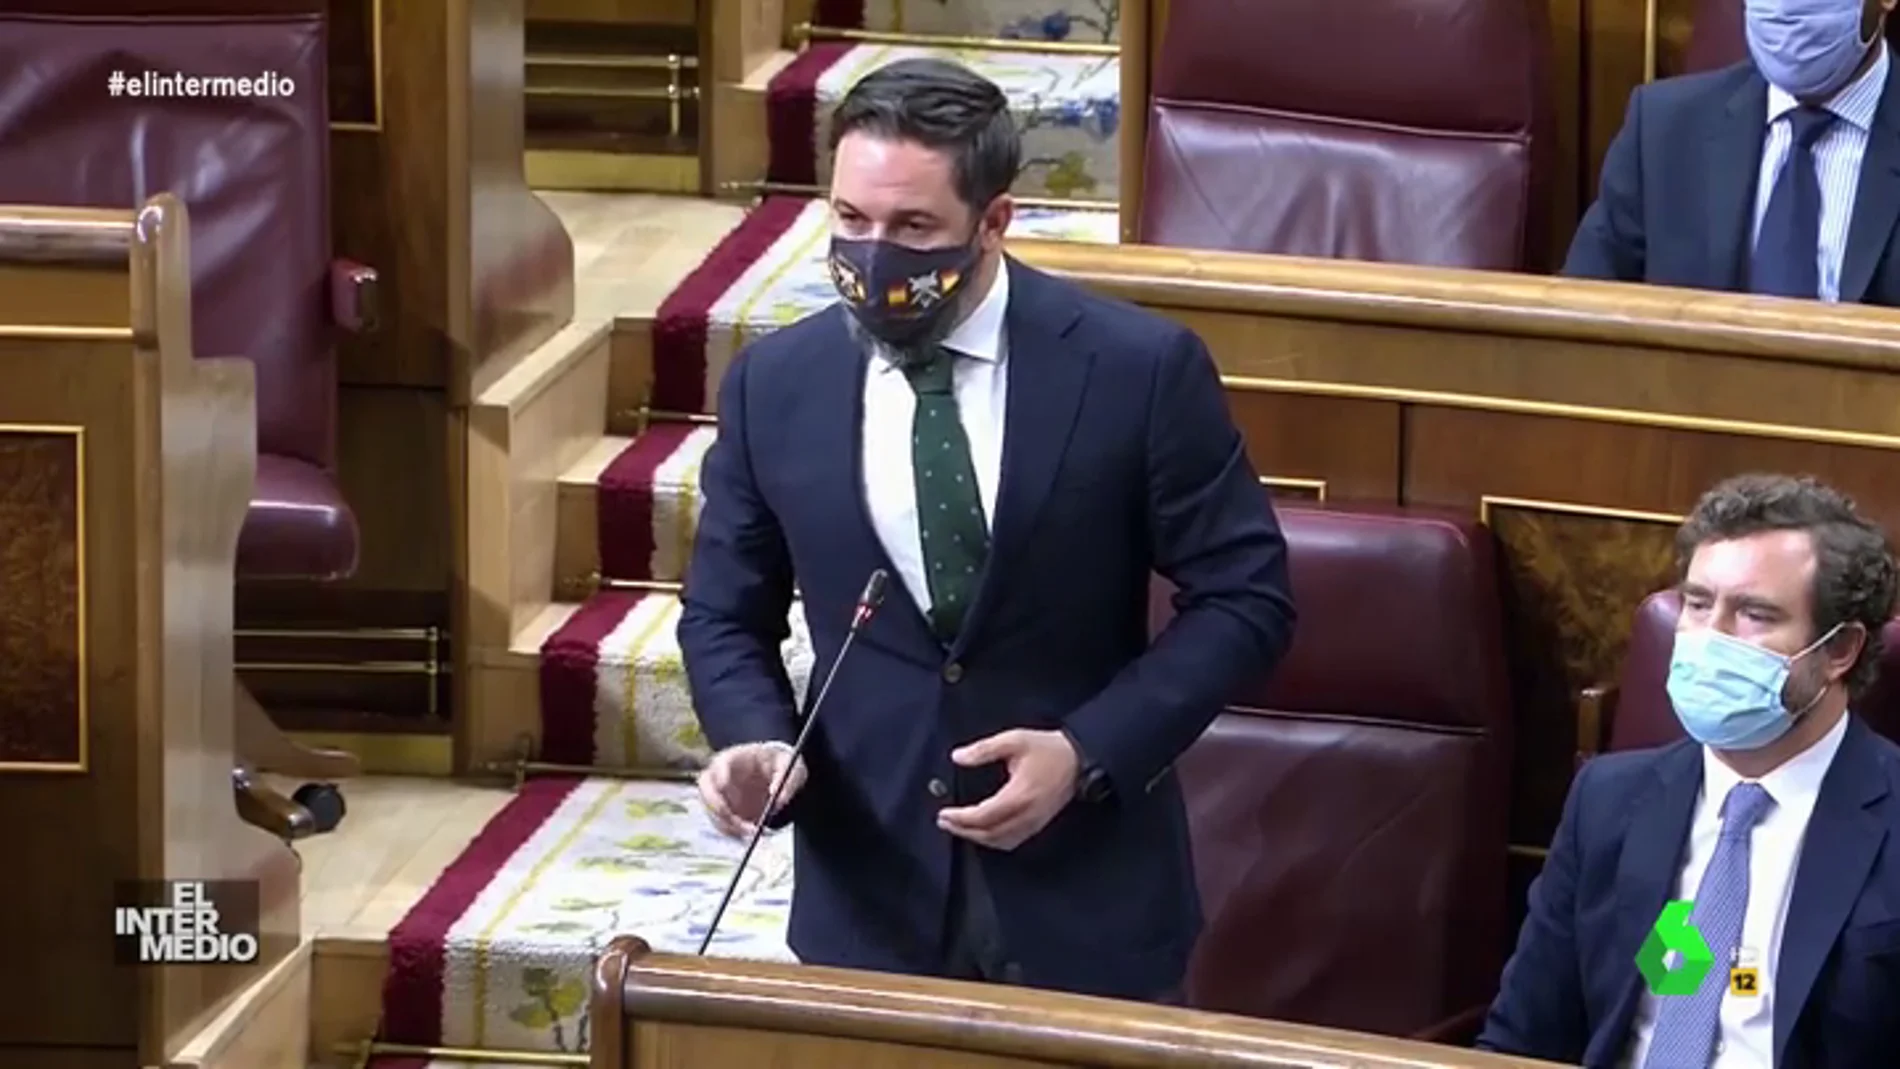 Vídeo manipulado - Esta es la primera vez que Abascal cede a las órdenes de Sánchez en el Congreso